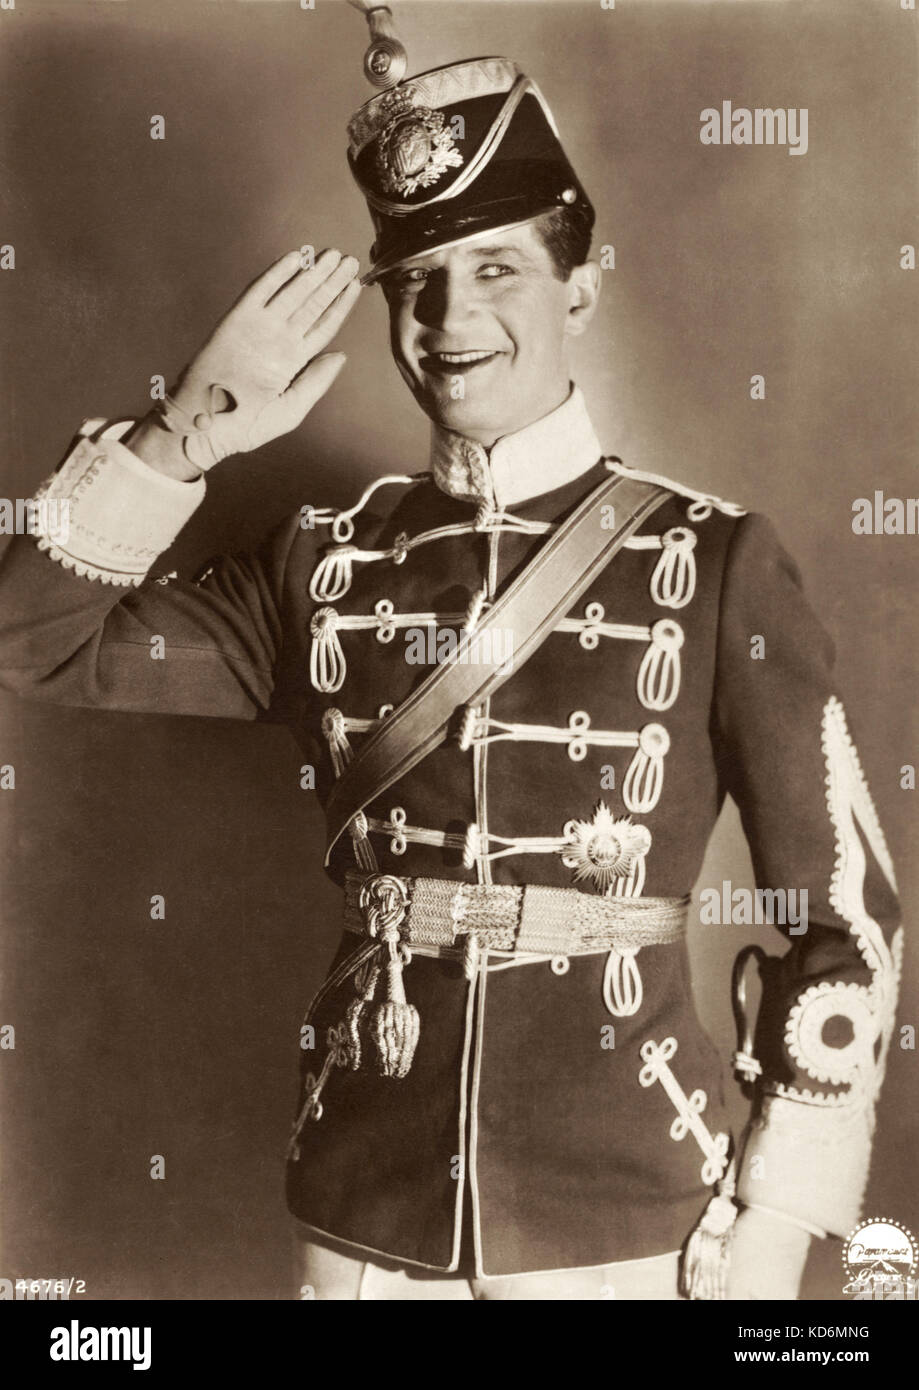 Maurice Chevalier, retrato saludando en uniforme. Humorista francés, cantante, actor, compositor, autor. 12 de septiembre de 1888 - 1 de enero de 1972 Foto de stock